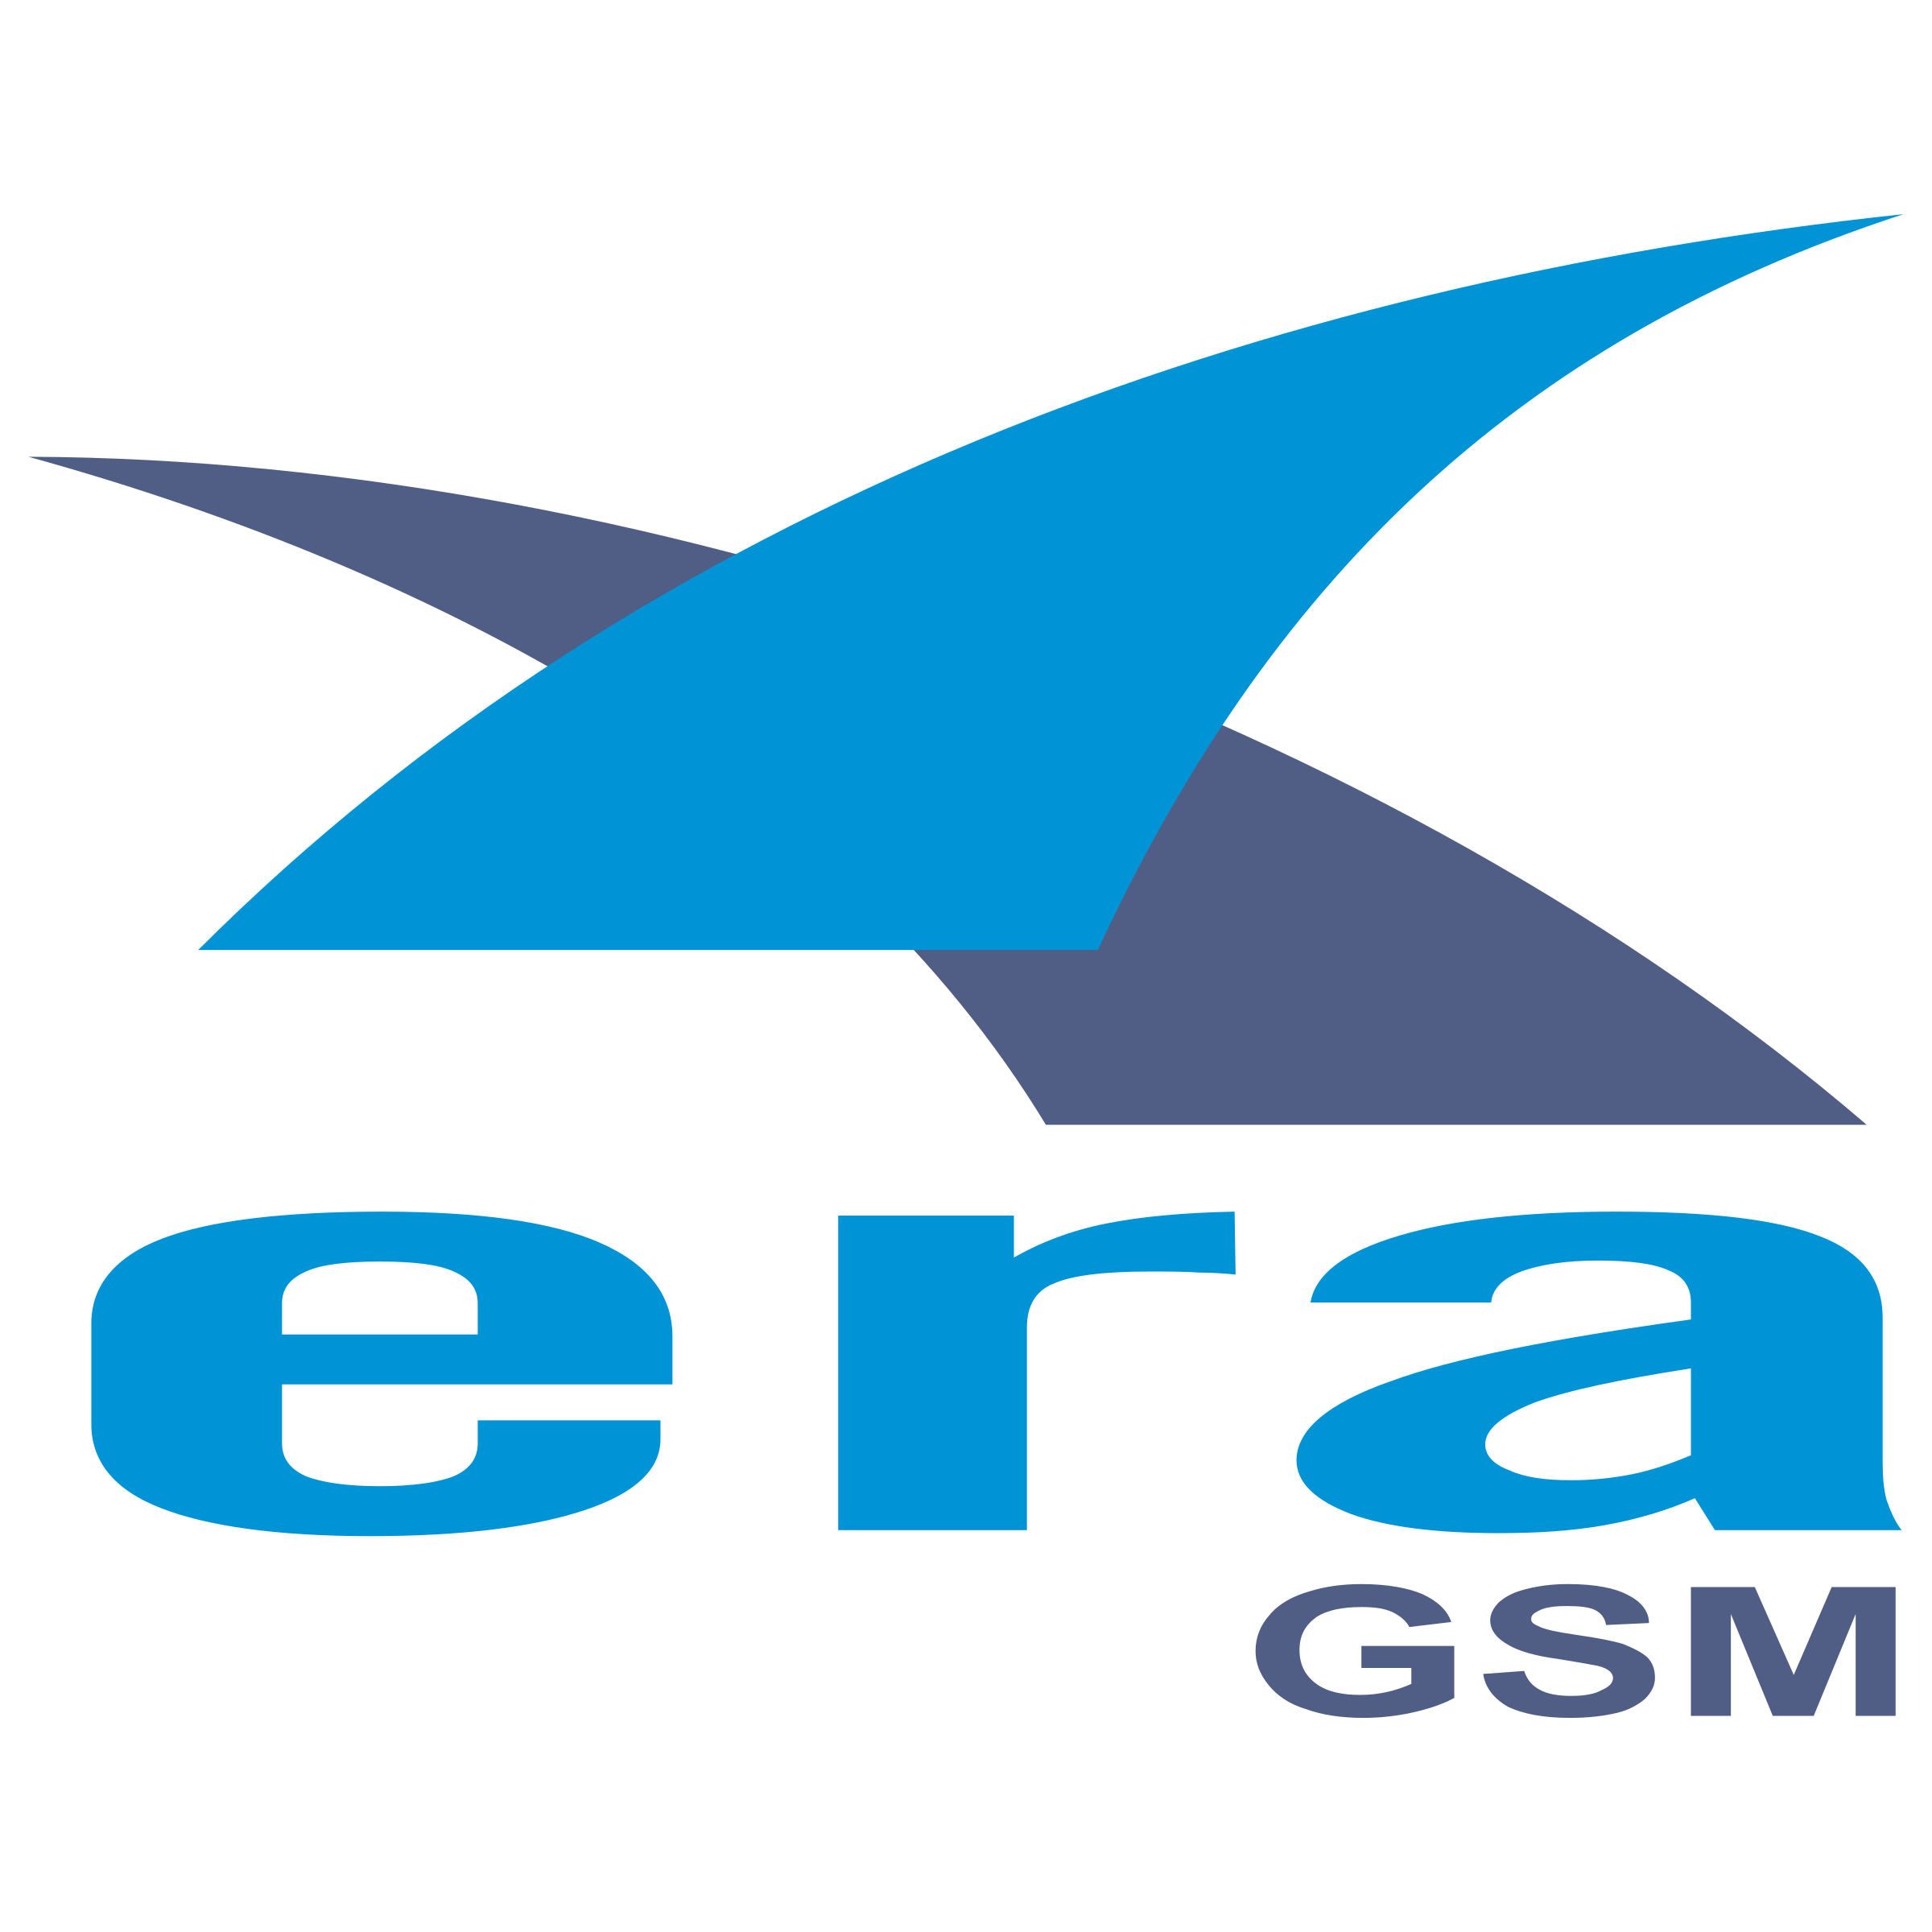 Era GSM Logo